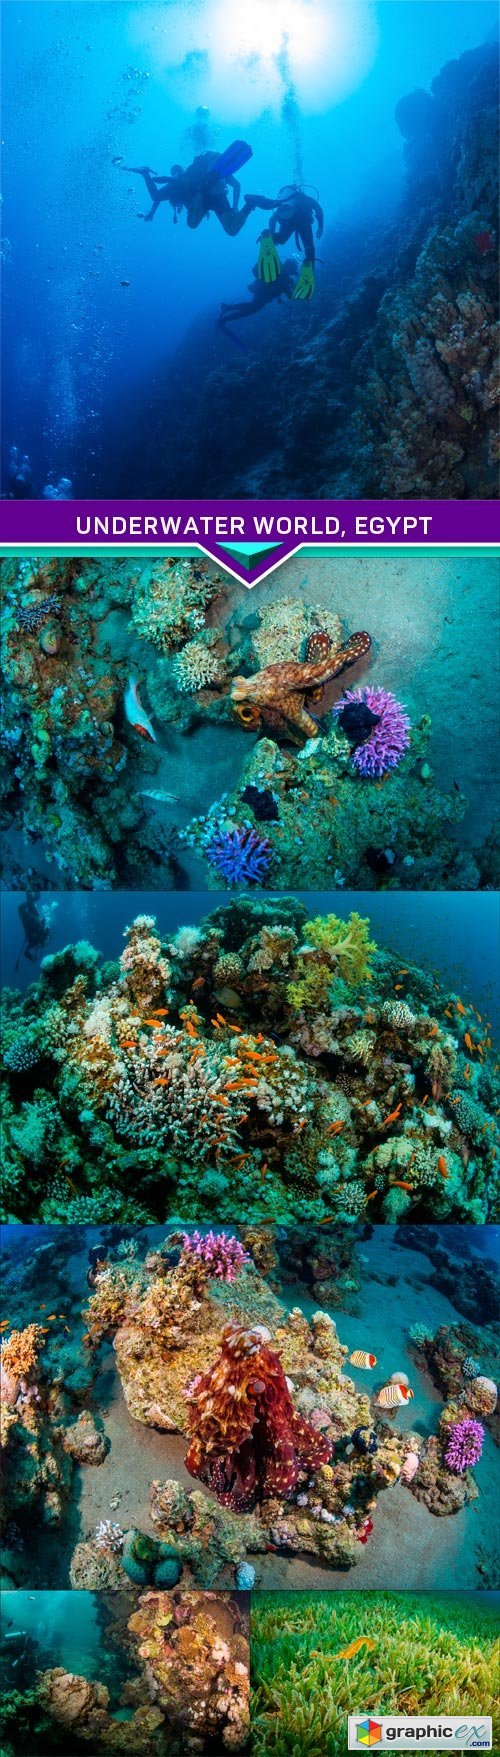 Underwater world, Egypt 6X JPEG